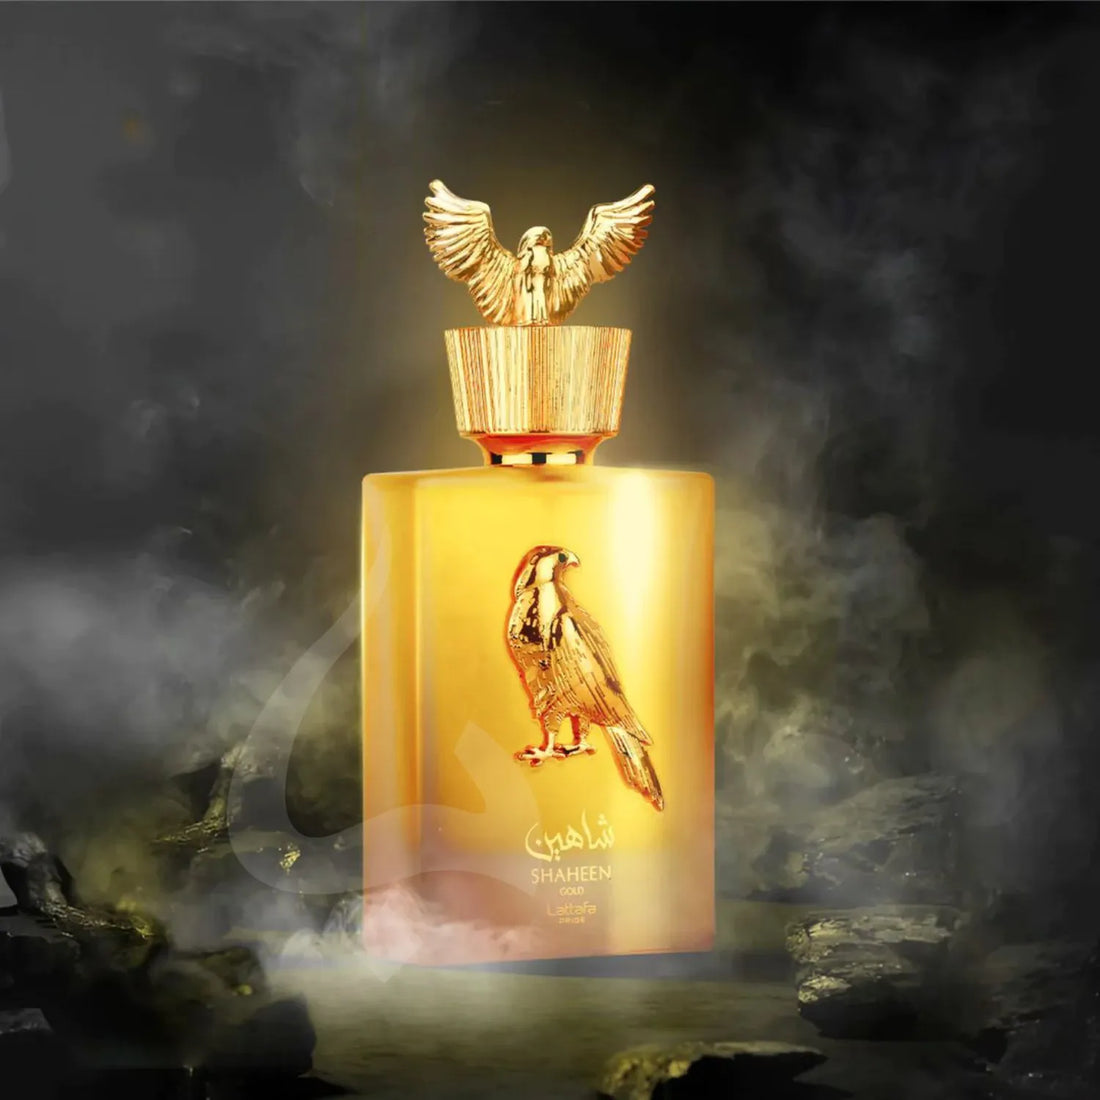 Shaheen Gold Perfume Lattafa Bottle